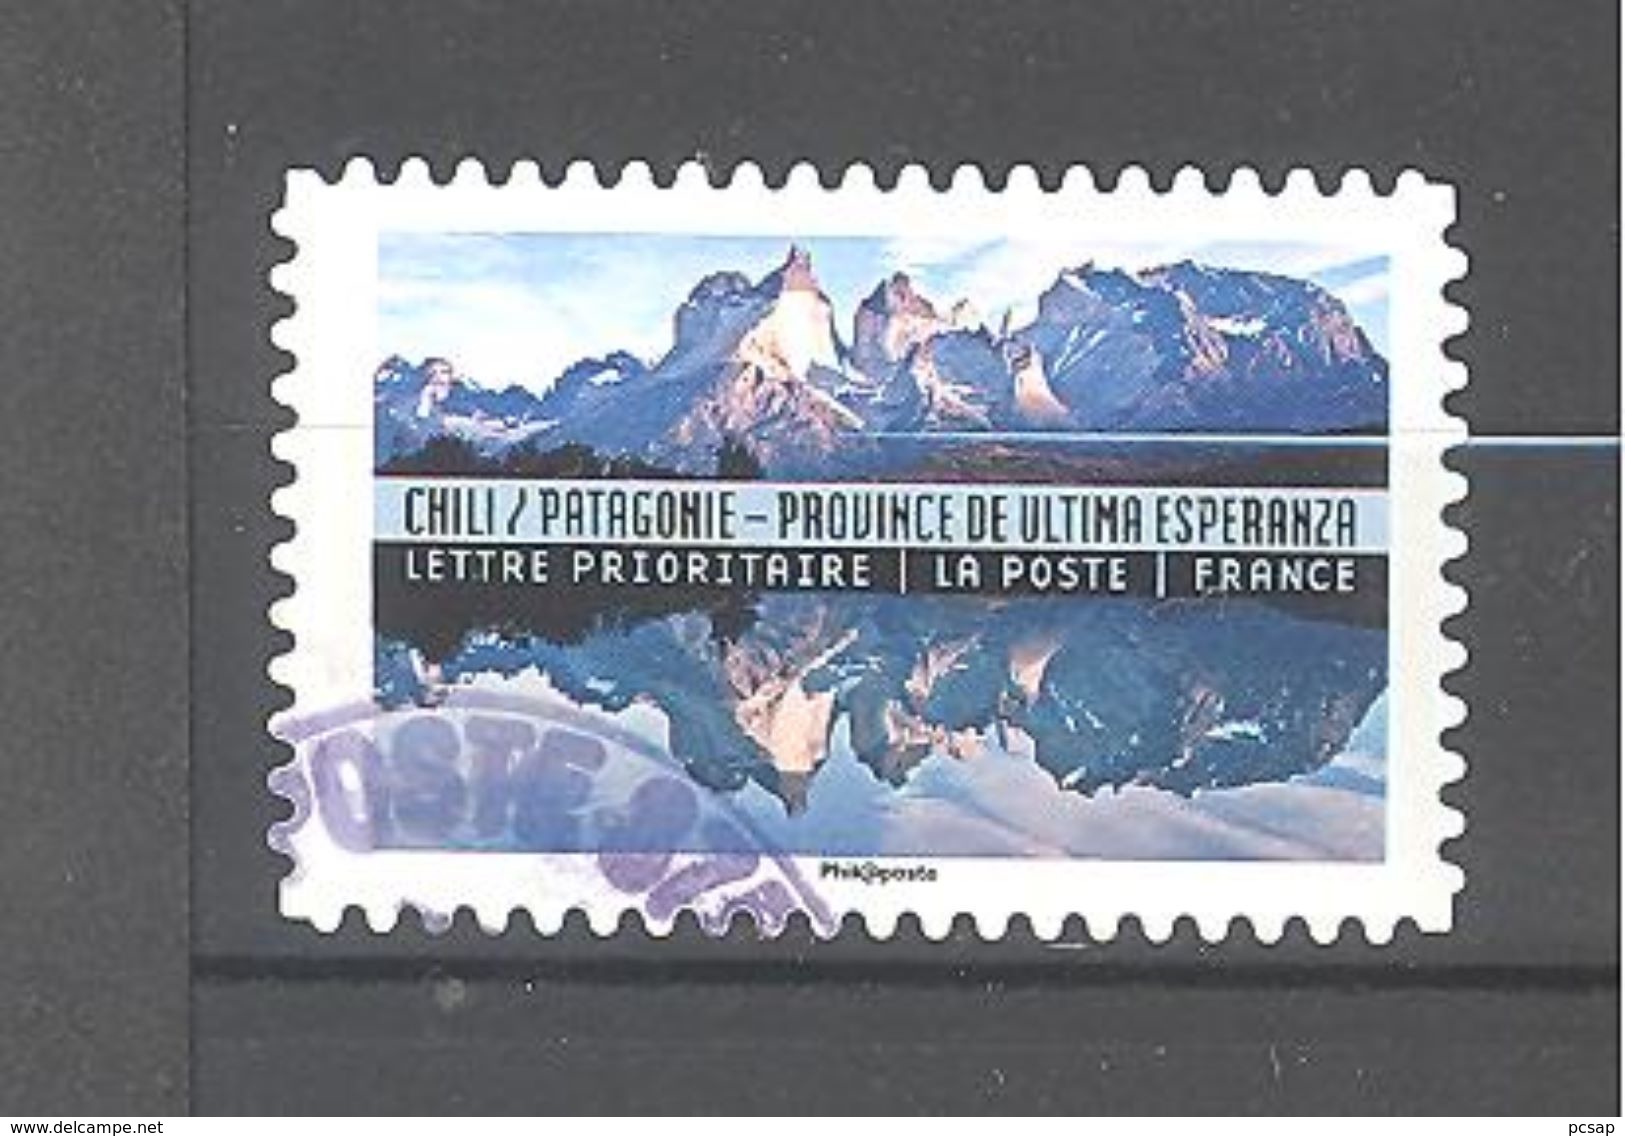 France Autoadhésif Oblitéré N°1371 (Reflets Paysages Du Monde - Chili) (cachet Rond) - Oblitérés